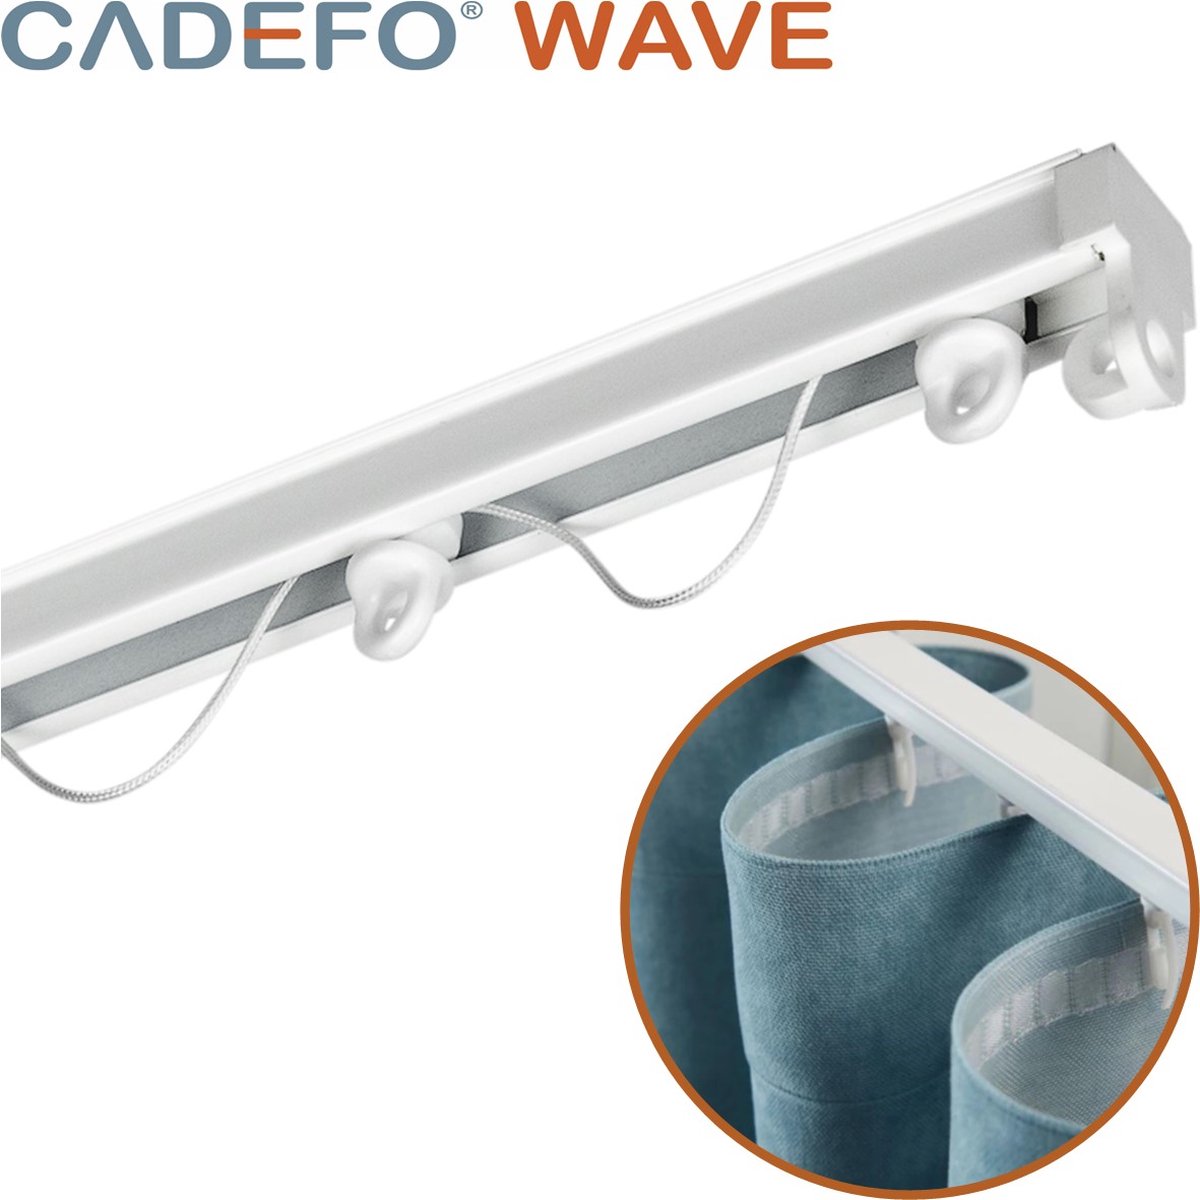 CADEFO WAVE (301 - 350 cm) Gordijnrails - Compleet op maat! - UIT 1 STUK - Leverbaar tot 6 meter - Plafondbevestiging - Lengte 326 cm